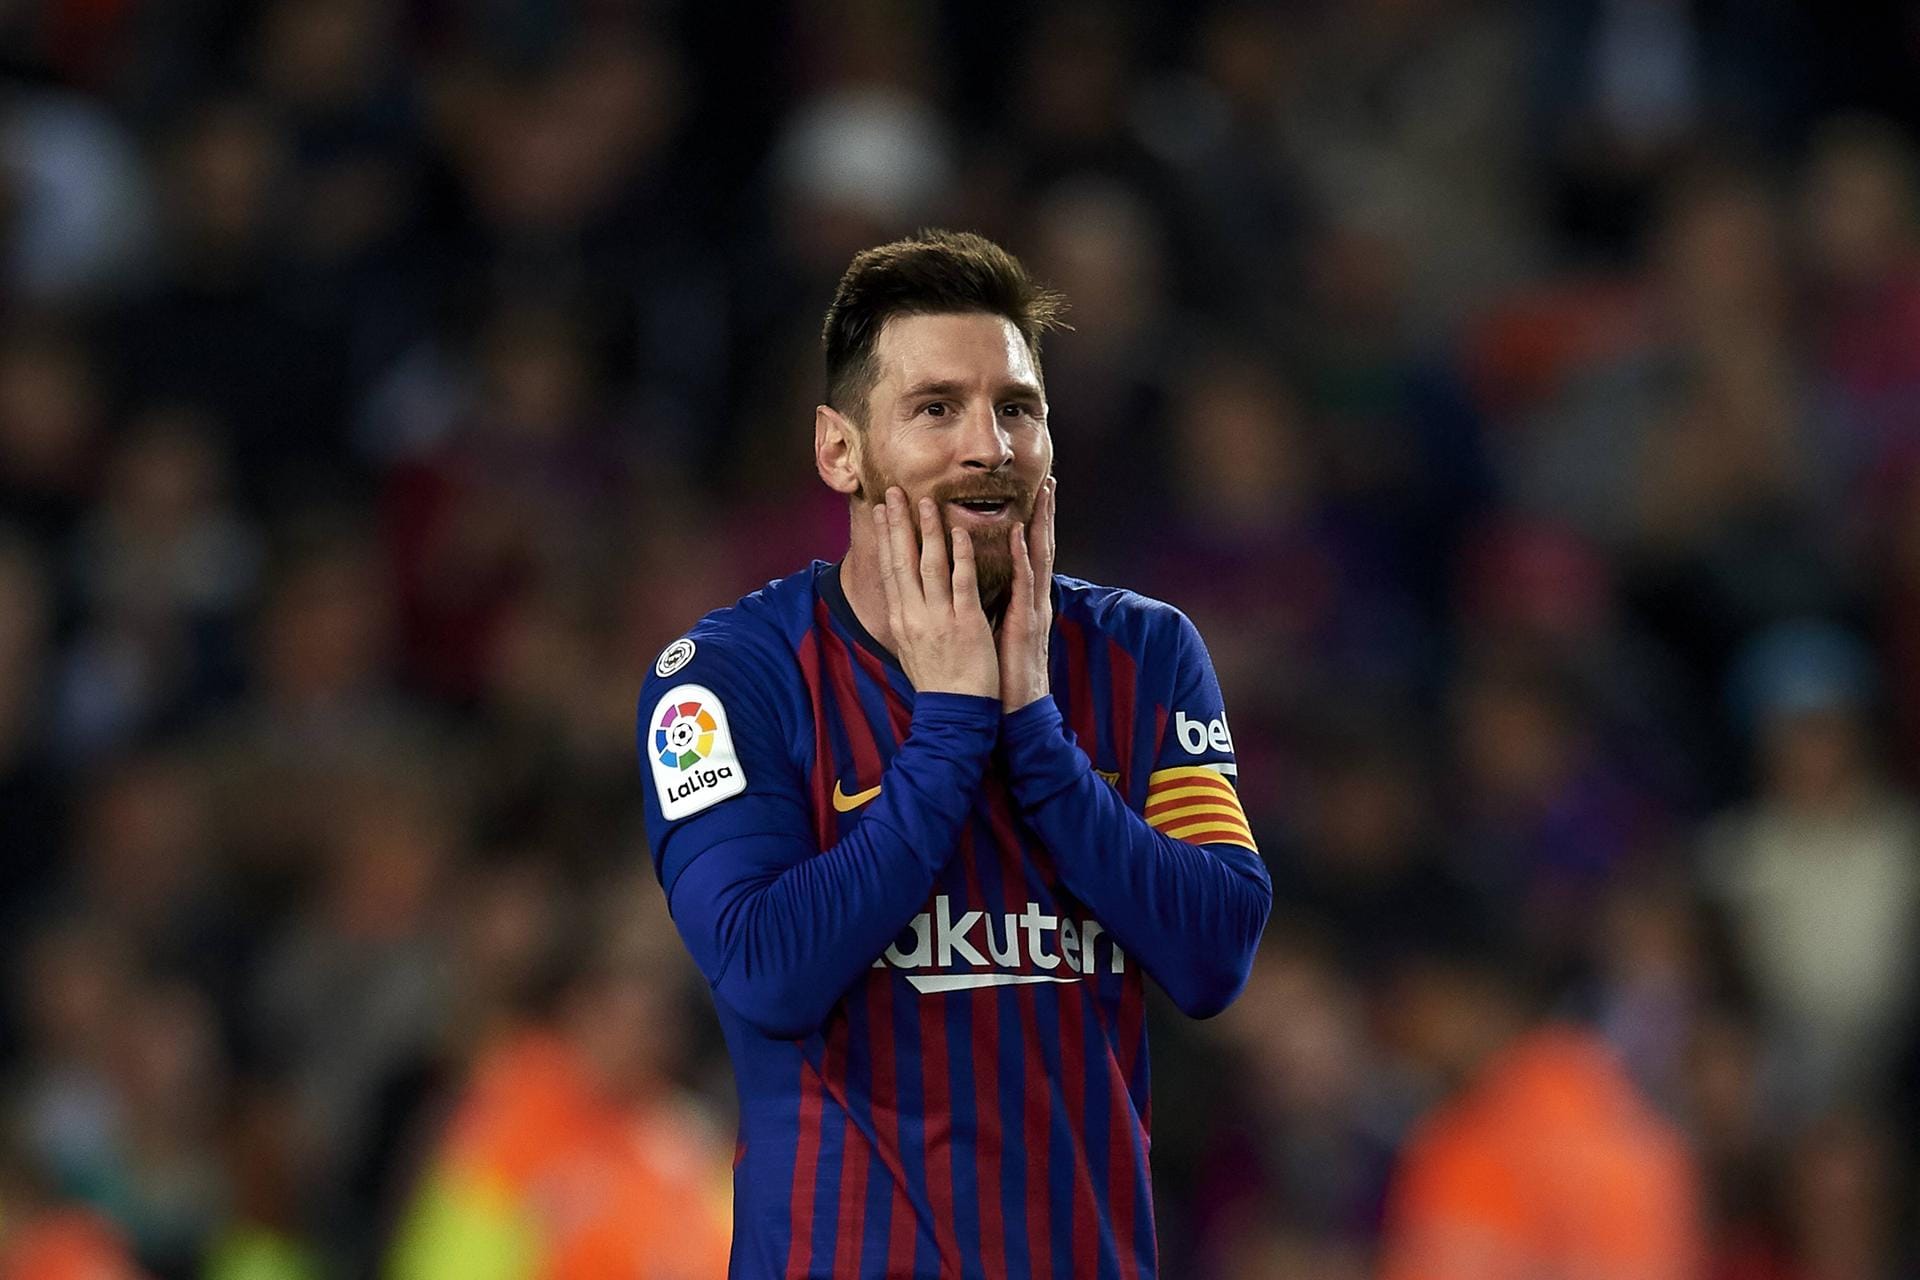 Platz 1: Lionel Messi (Fußball/FC Barcelona/Argentinien) – 127 Mio. US-Dollar.